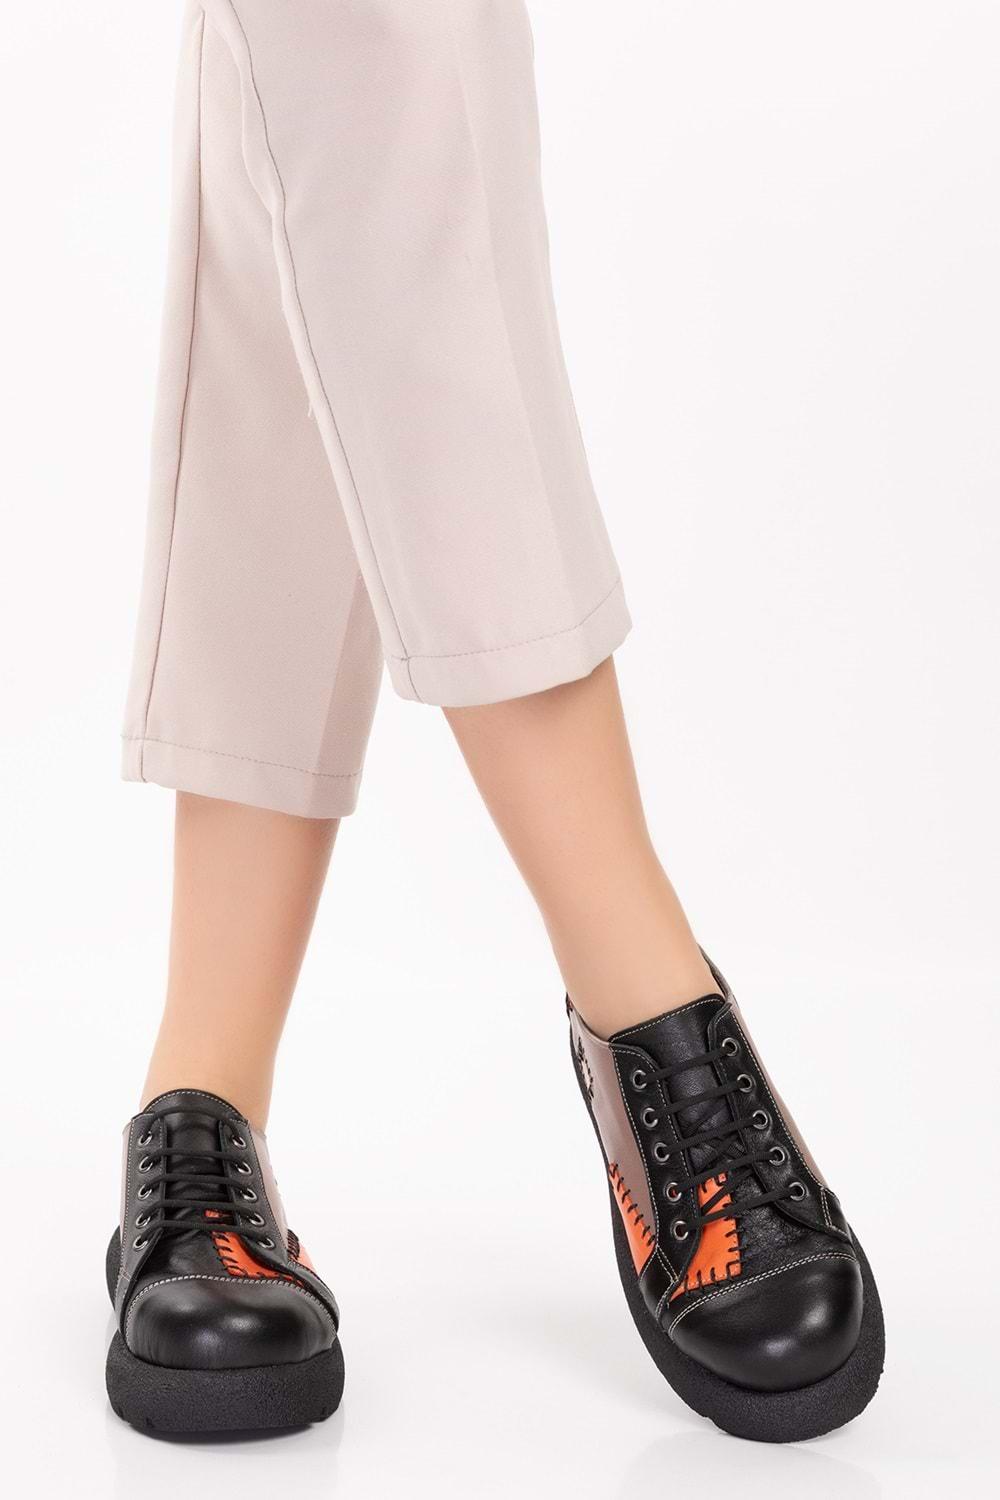 Gondol Hakiki Deri Yama Detaylı Tarz Ayakkabı tre.5083 - Siyah-Vizon - 36